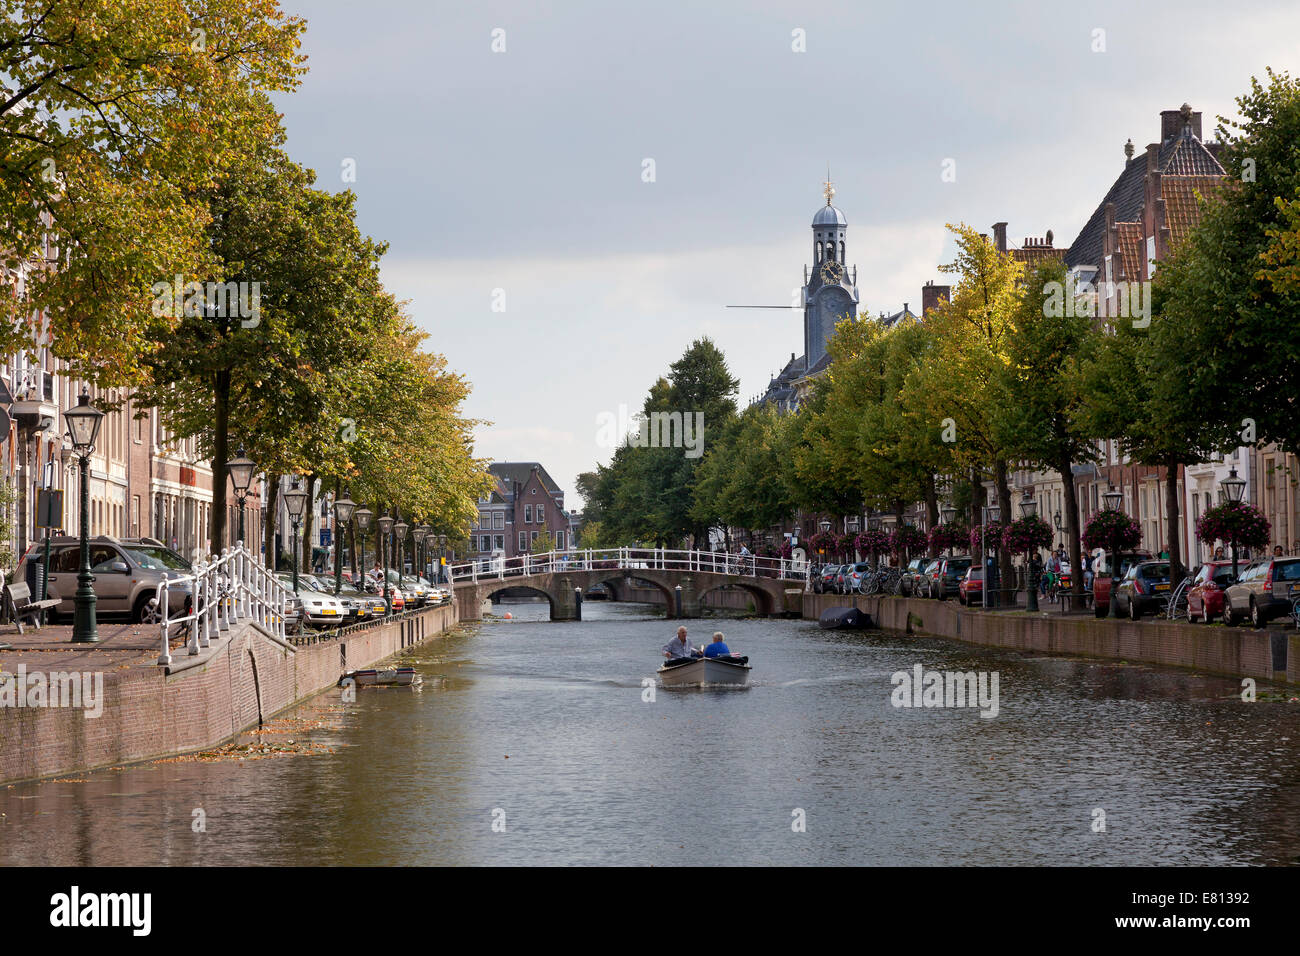 Nautisme sur Canal Rapenburg dans la ville de Leiden, Pays-Bas Banque D'Images